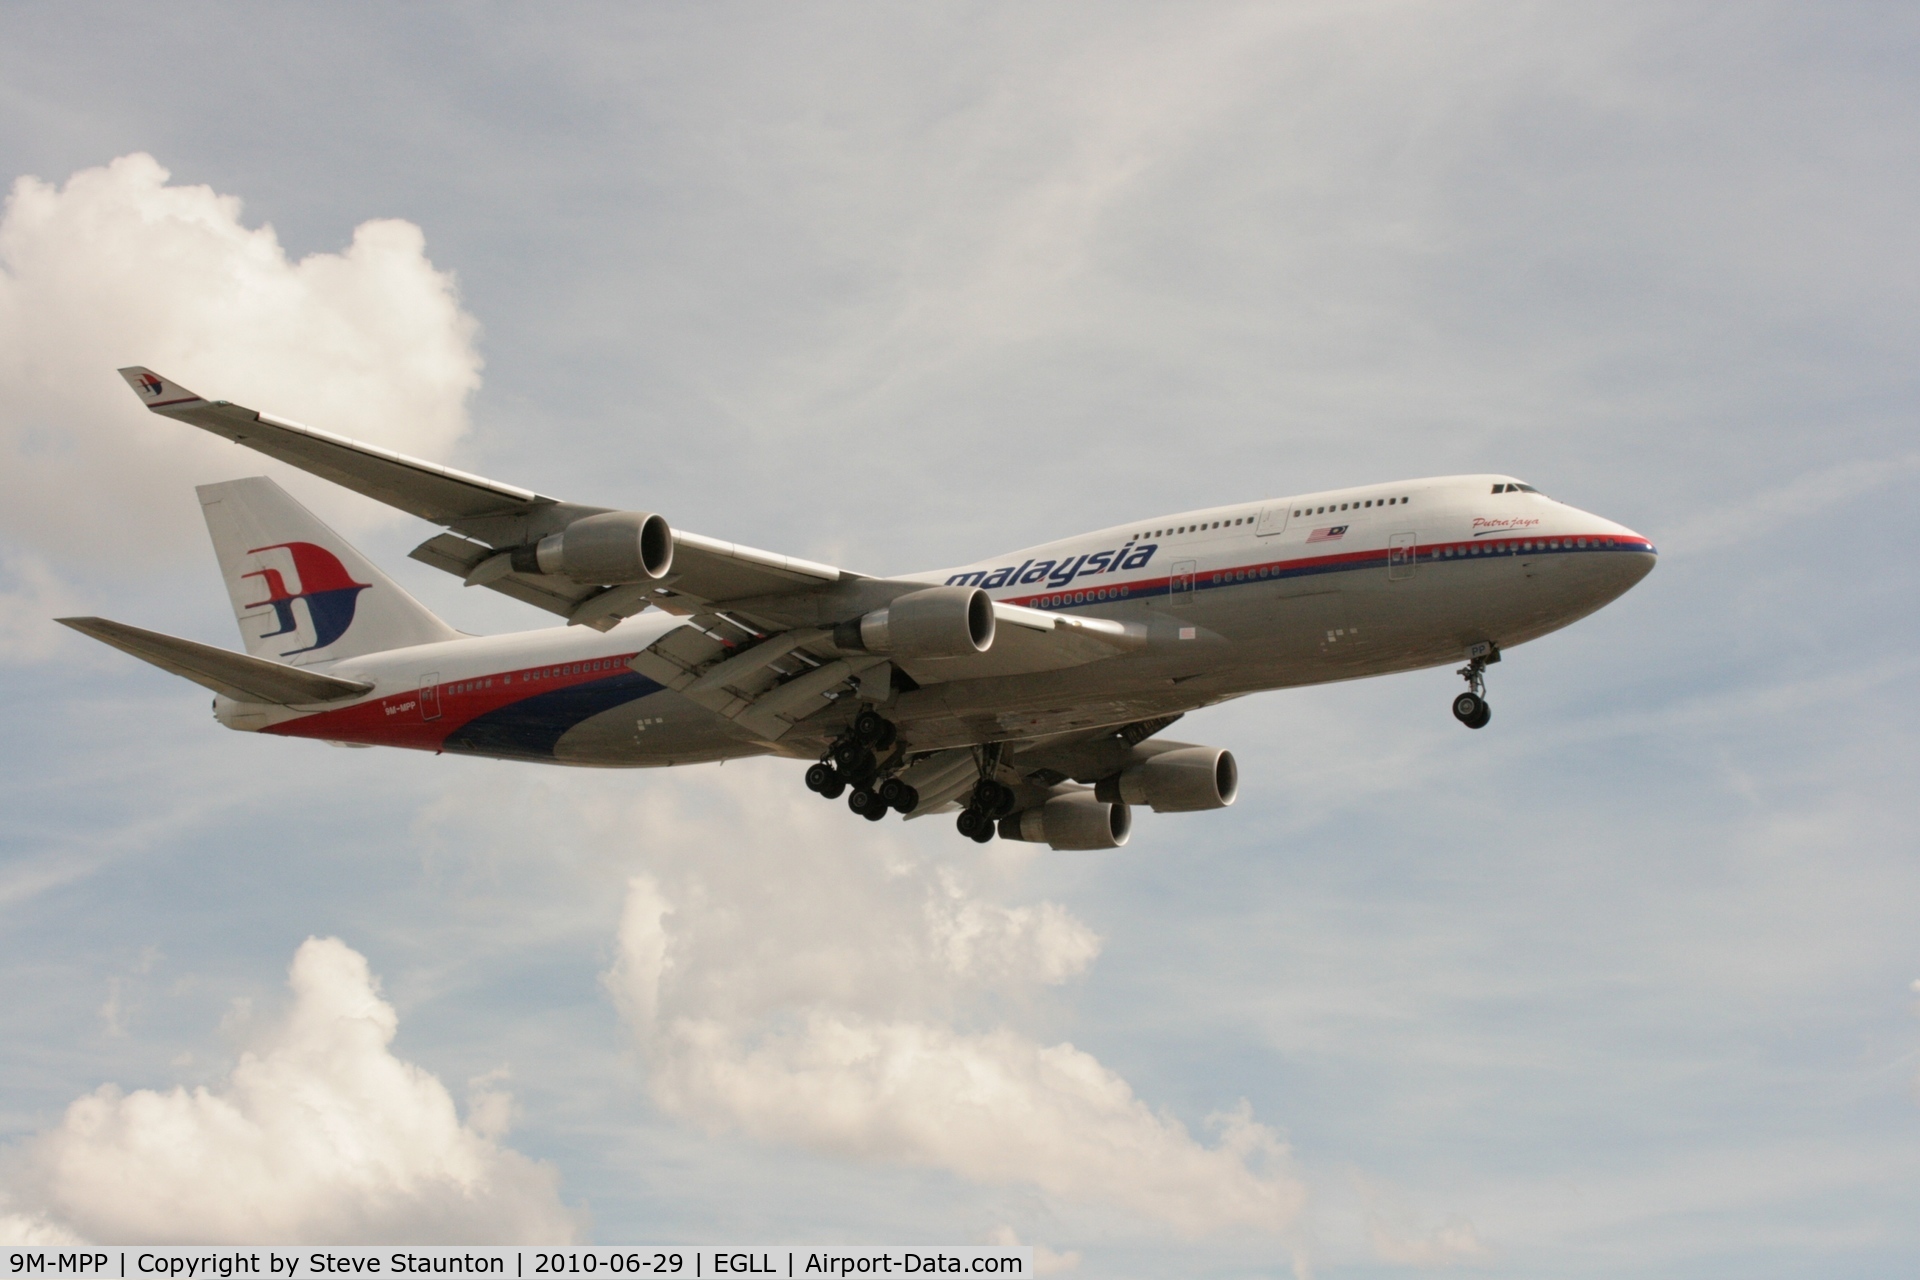 9M-MPP, 2002 Boeing 747-4H6 C/N 29900, Taken at Heathrow Airport, June 2010